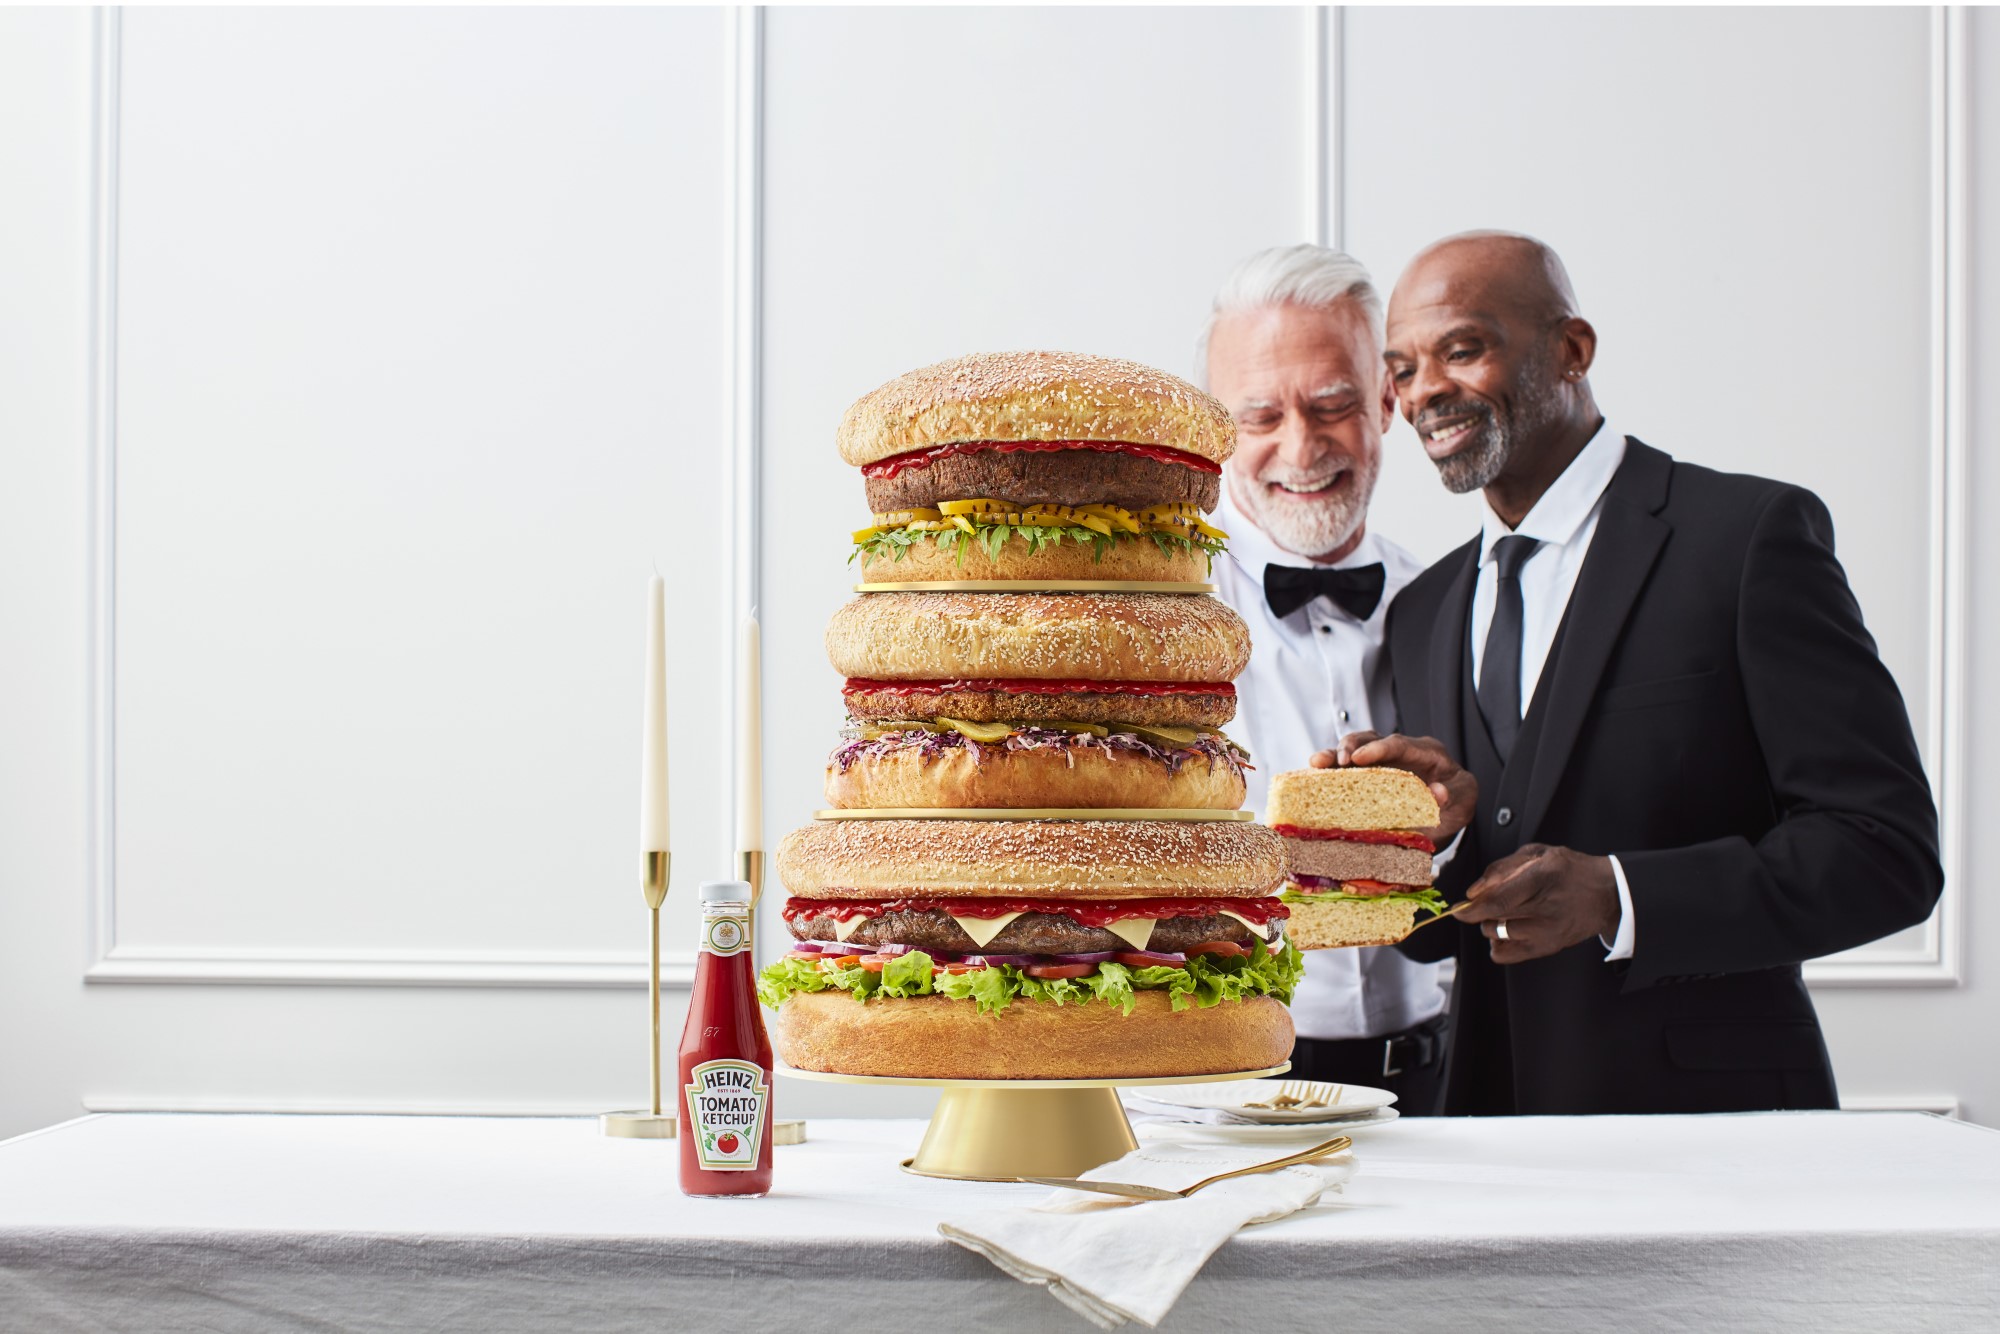 McDonald's Big Mac Cake | Amazing cakes, Novelty cakes, Mac cake